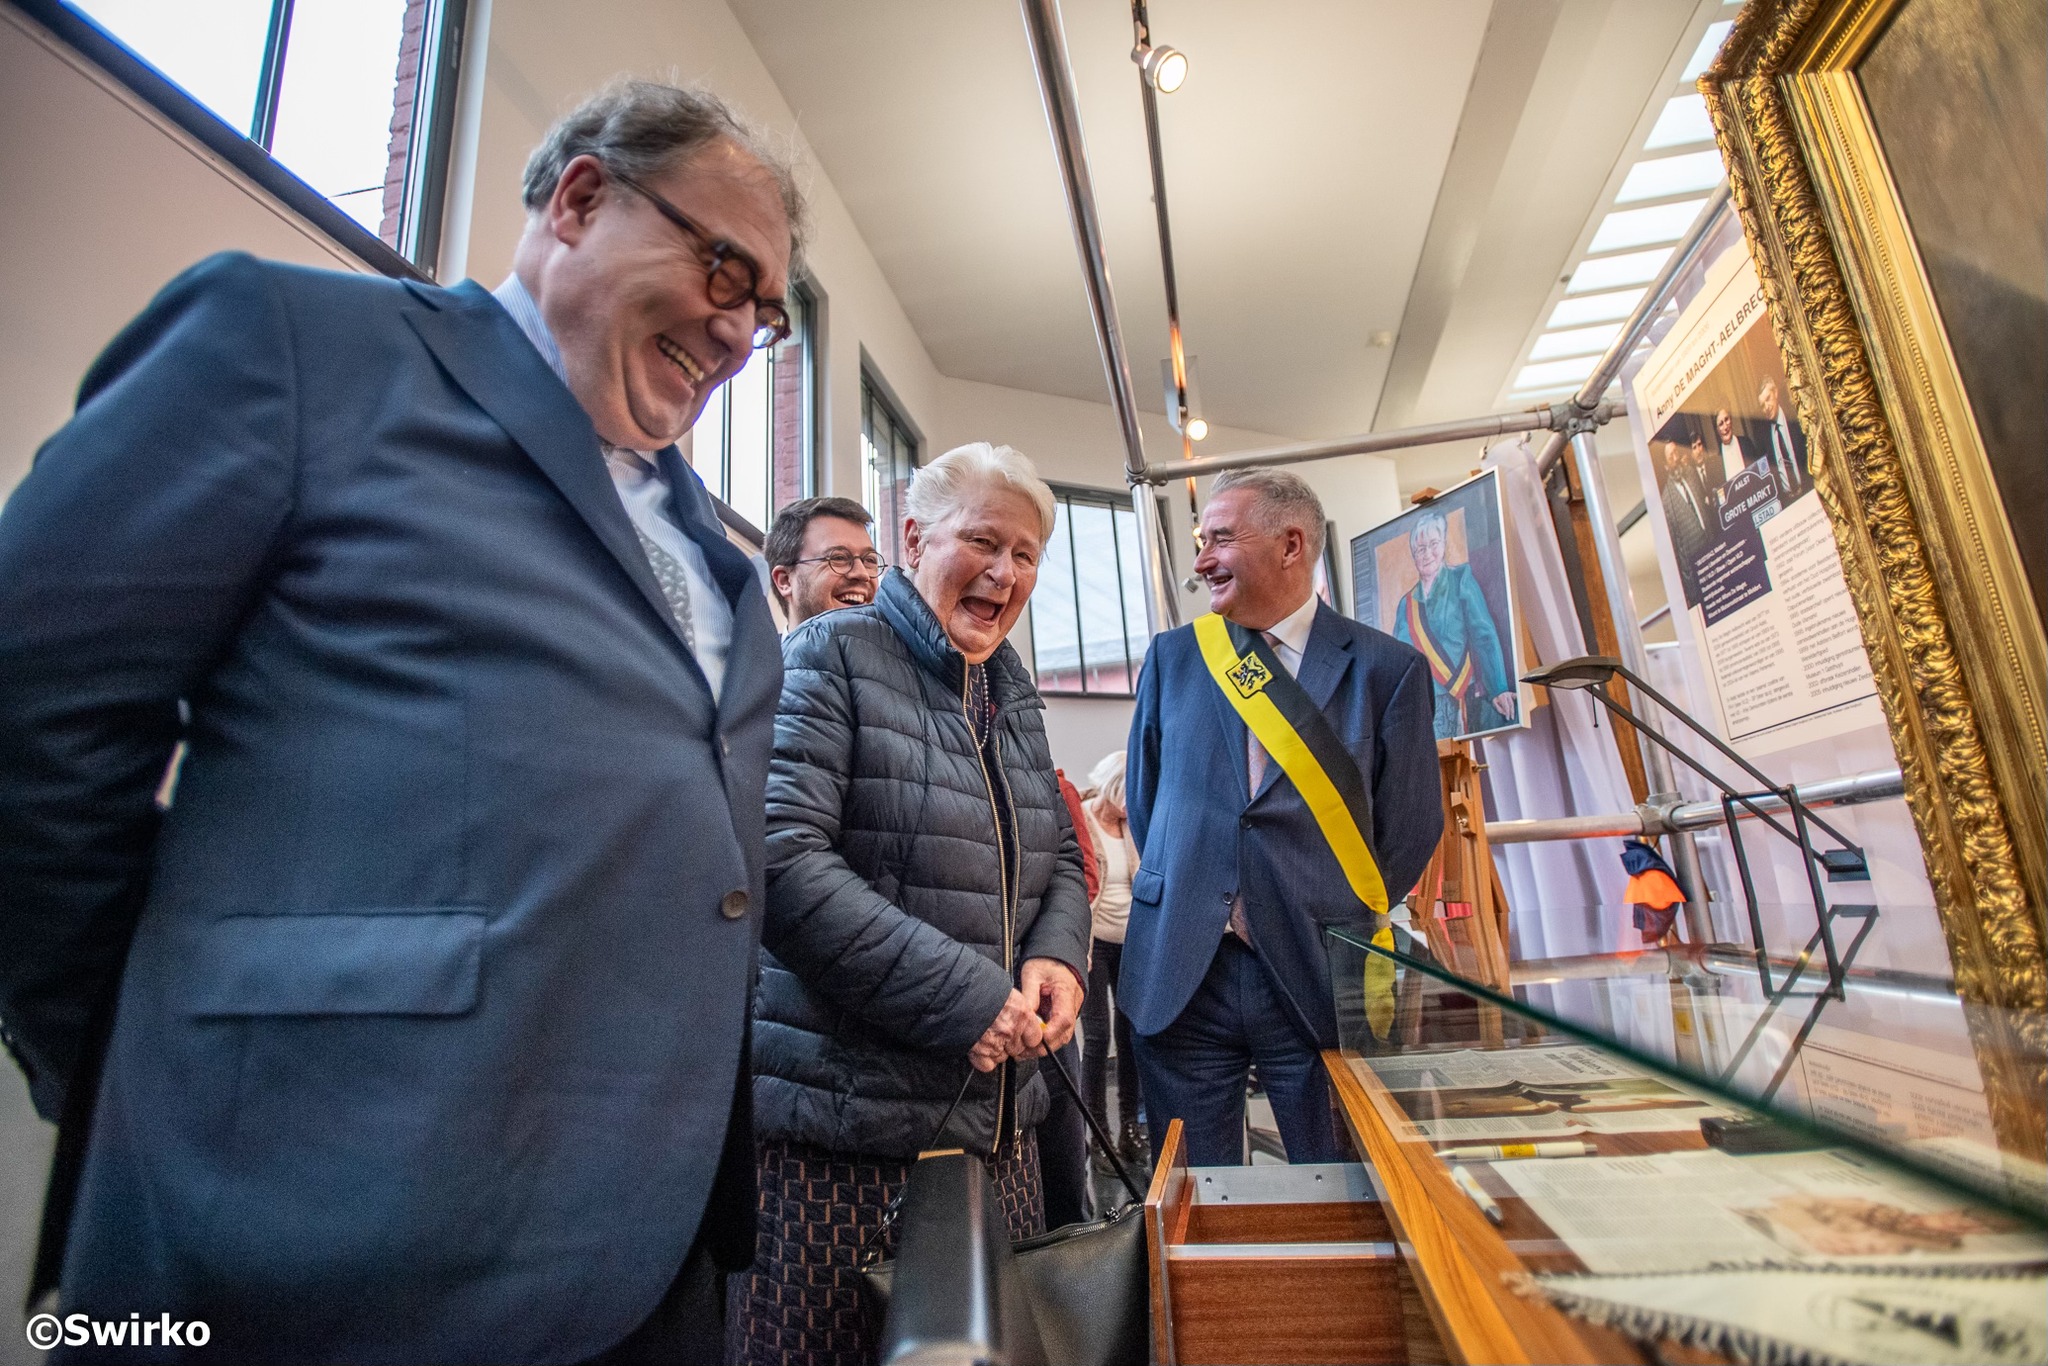 Vanaf vandaag pakt ’t Gasthuys uit met het drieluik ‘Sjerp’: een expo, een reeks nocturnes en een boek over het bestuur en de burgemeesters van Aalst.